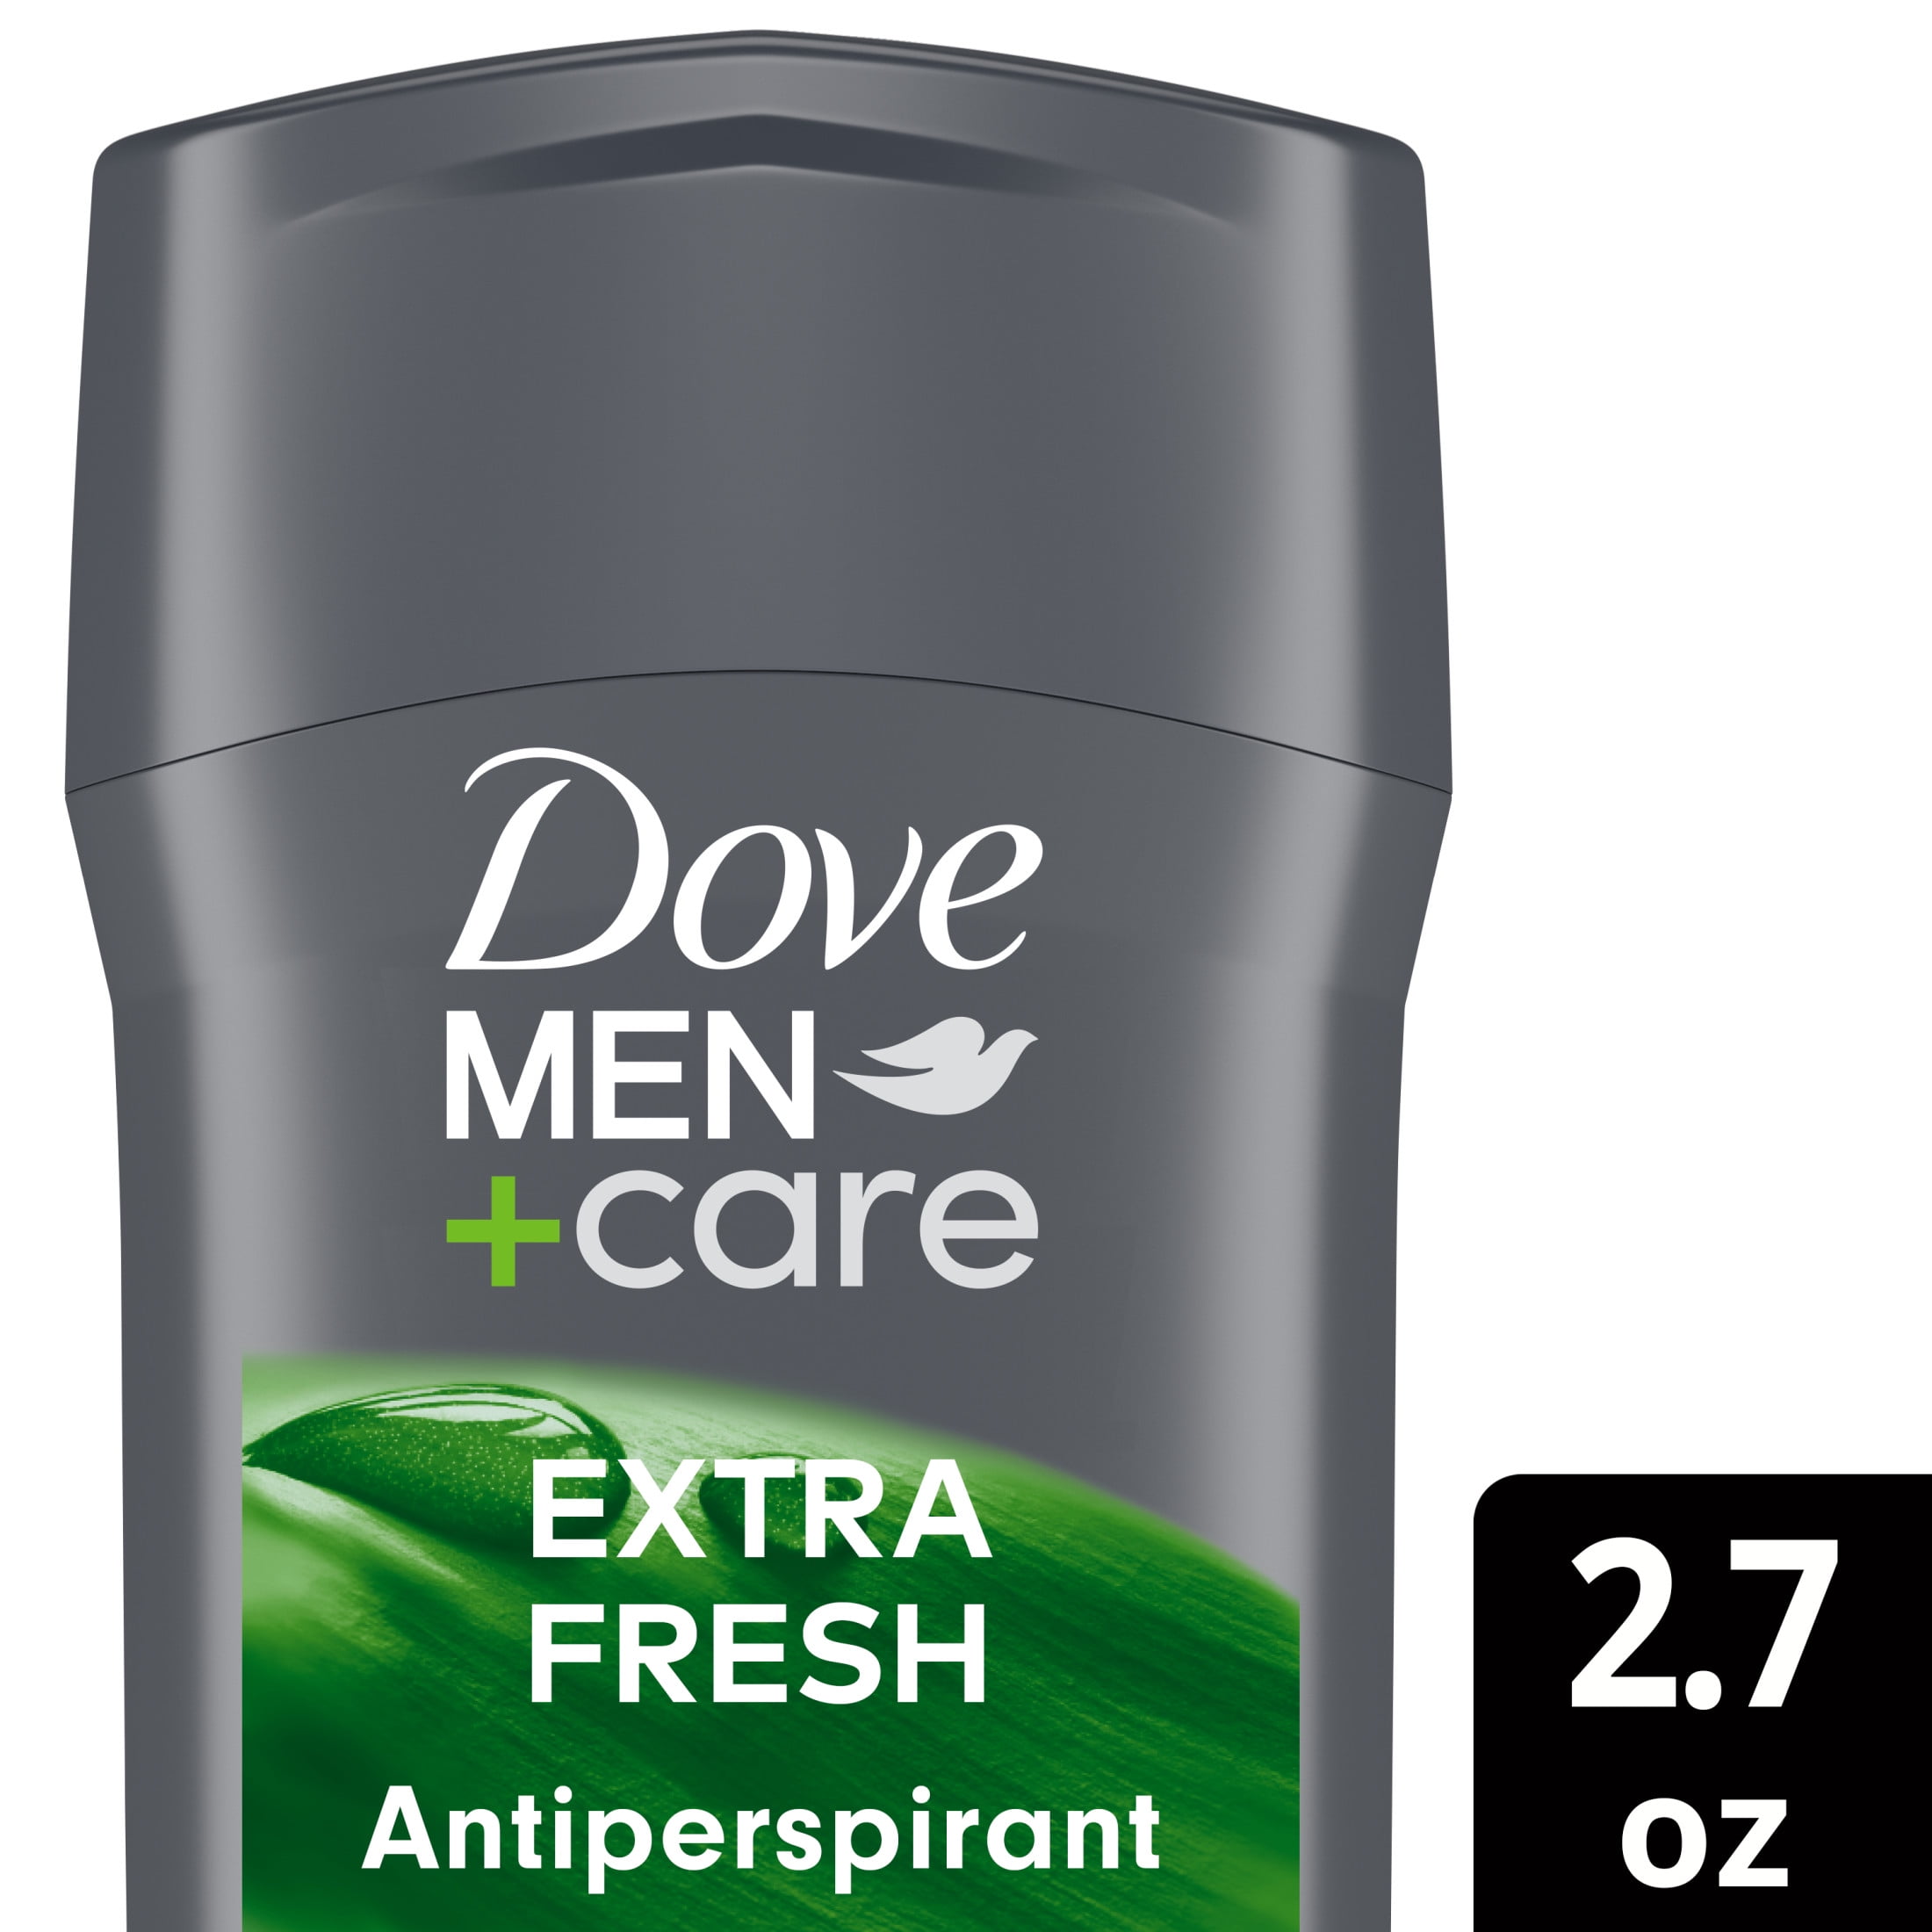 Dove Men+Care Extra Fresh 72H Men's Antiperspirant Deodorant Stick, 2.7 oz